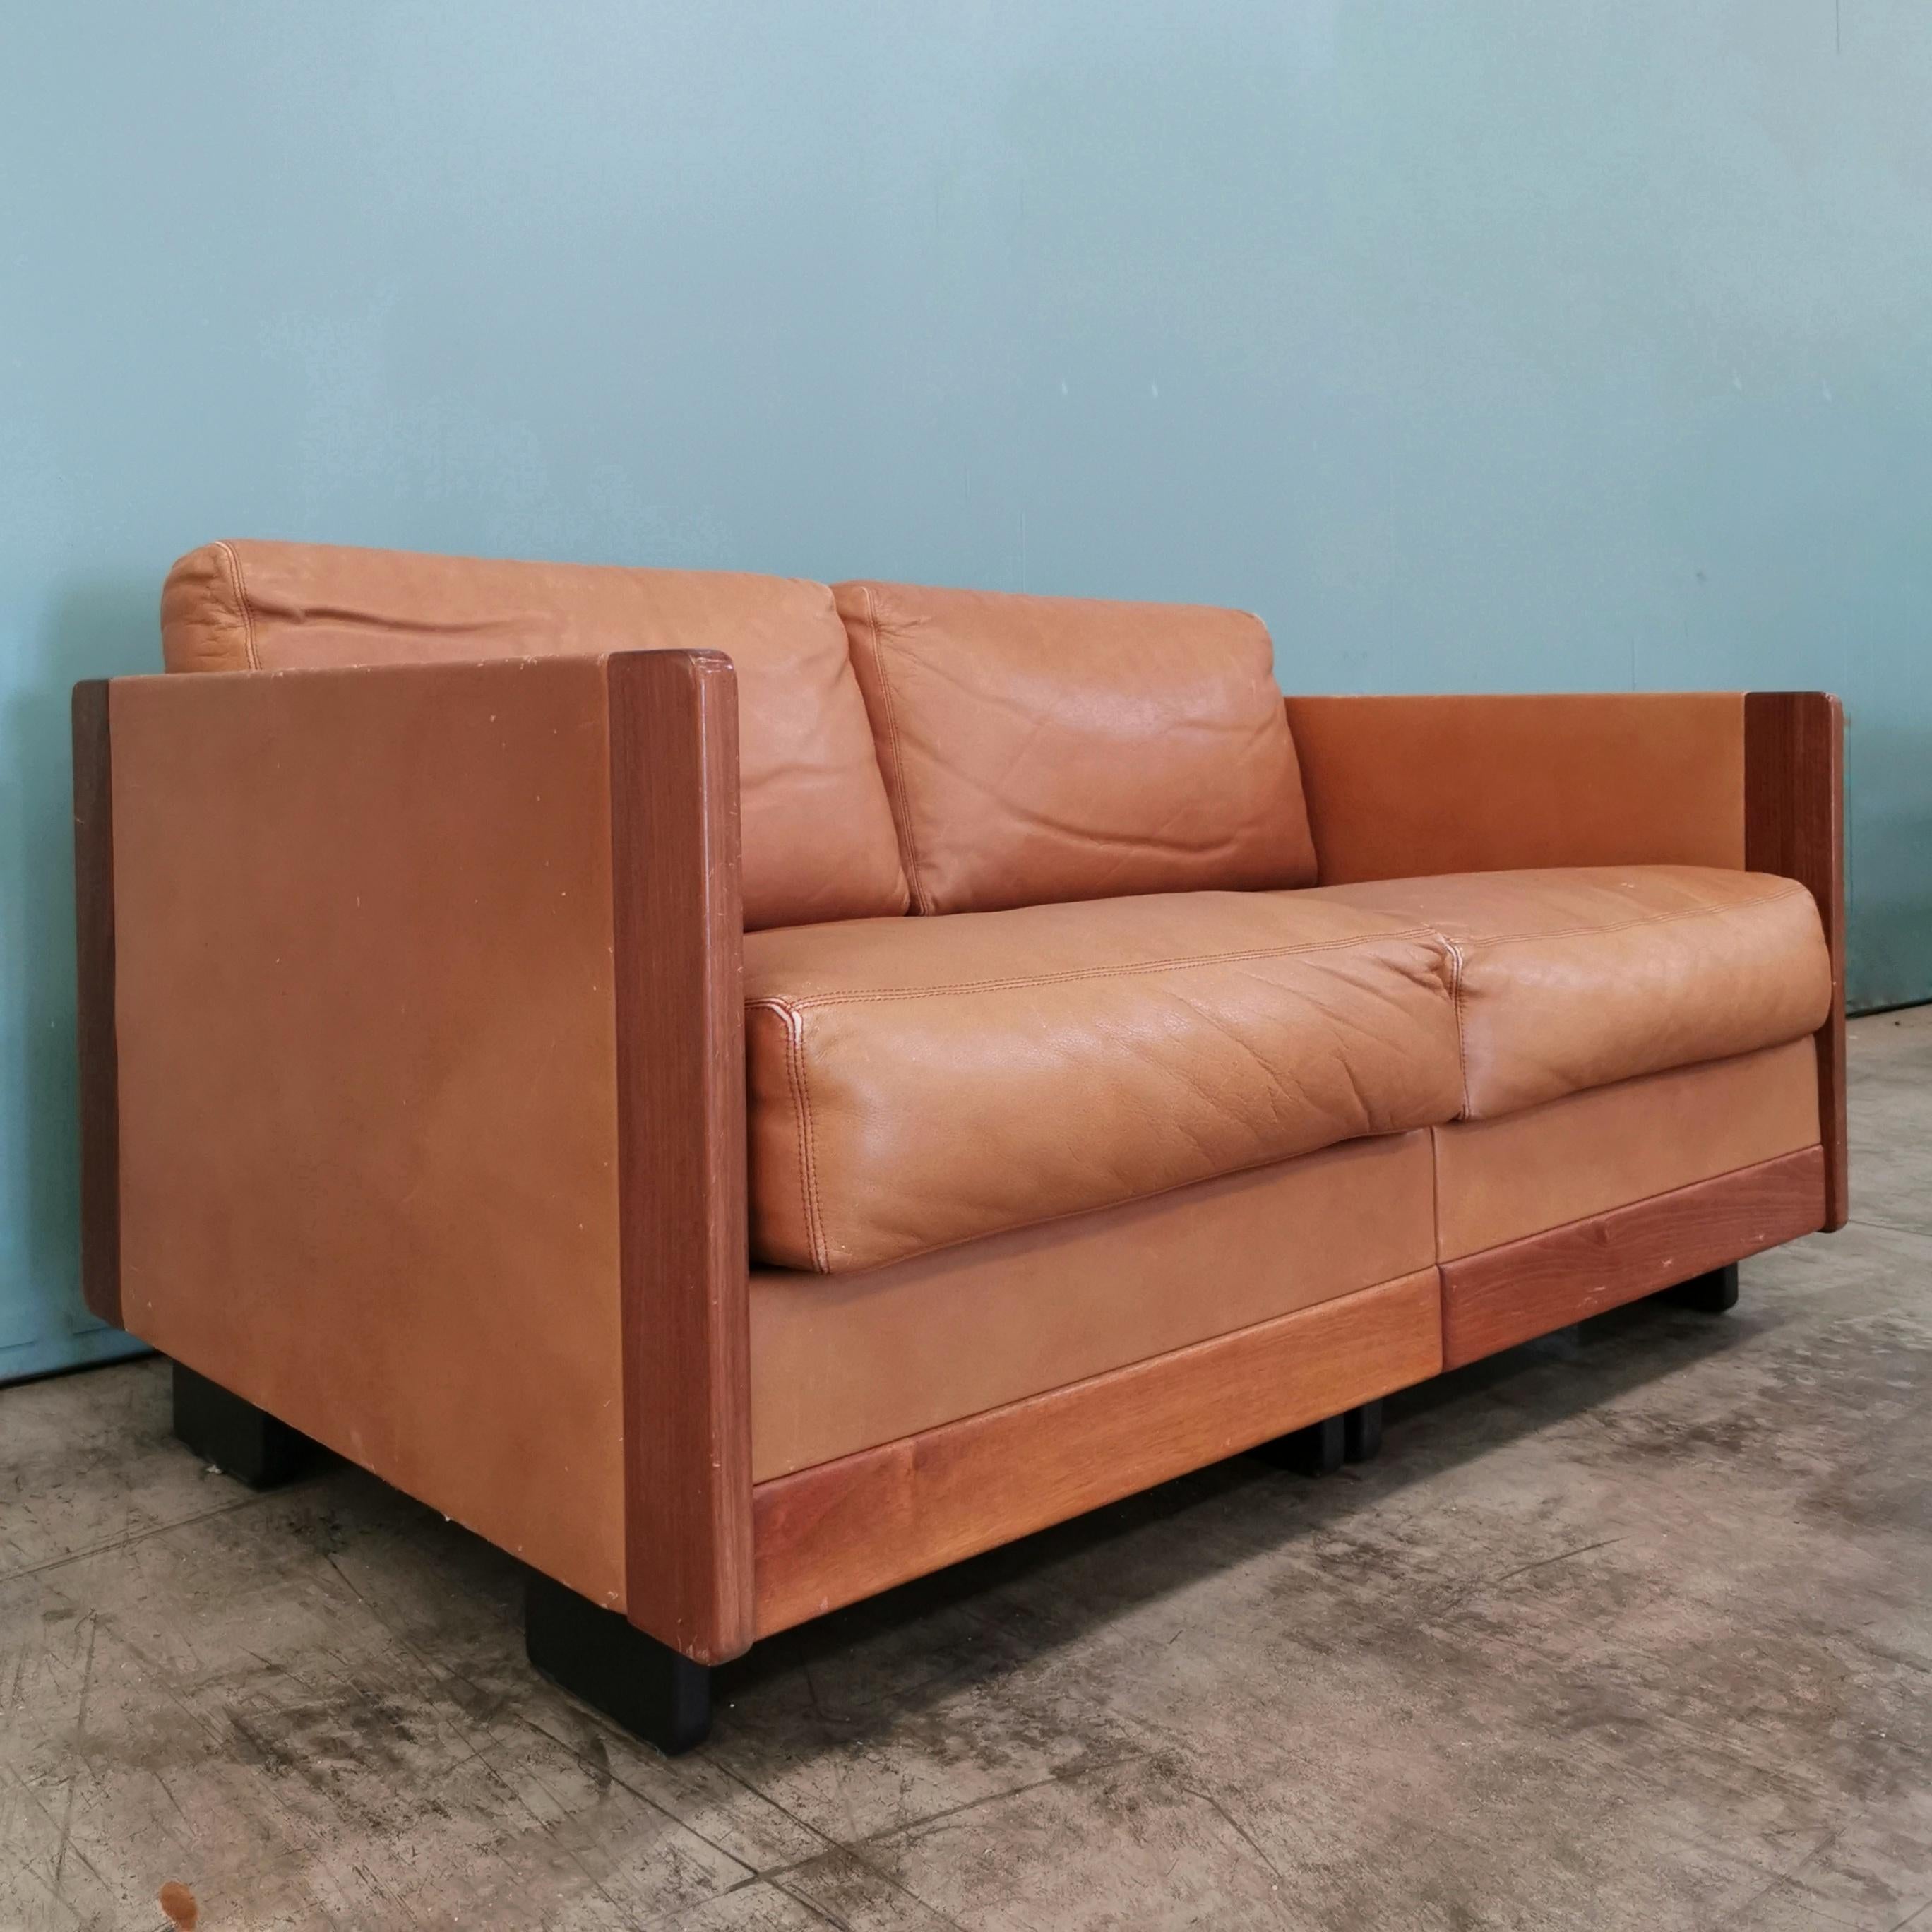 Rara versione del divano 920 di Cassina disegnato da Afra e Tobia Scarpa negli anni 60. Structure en cuir et rivestimento en granulés. Buone condizioni generali con piccoli segni del tempo.